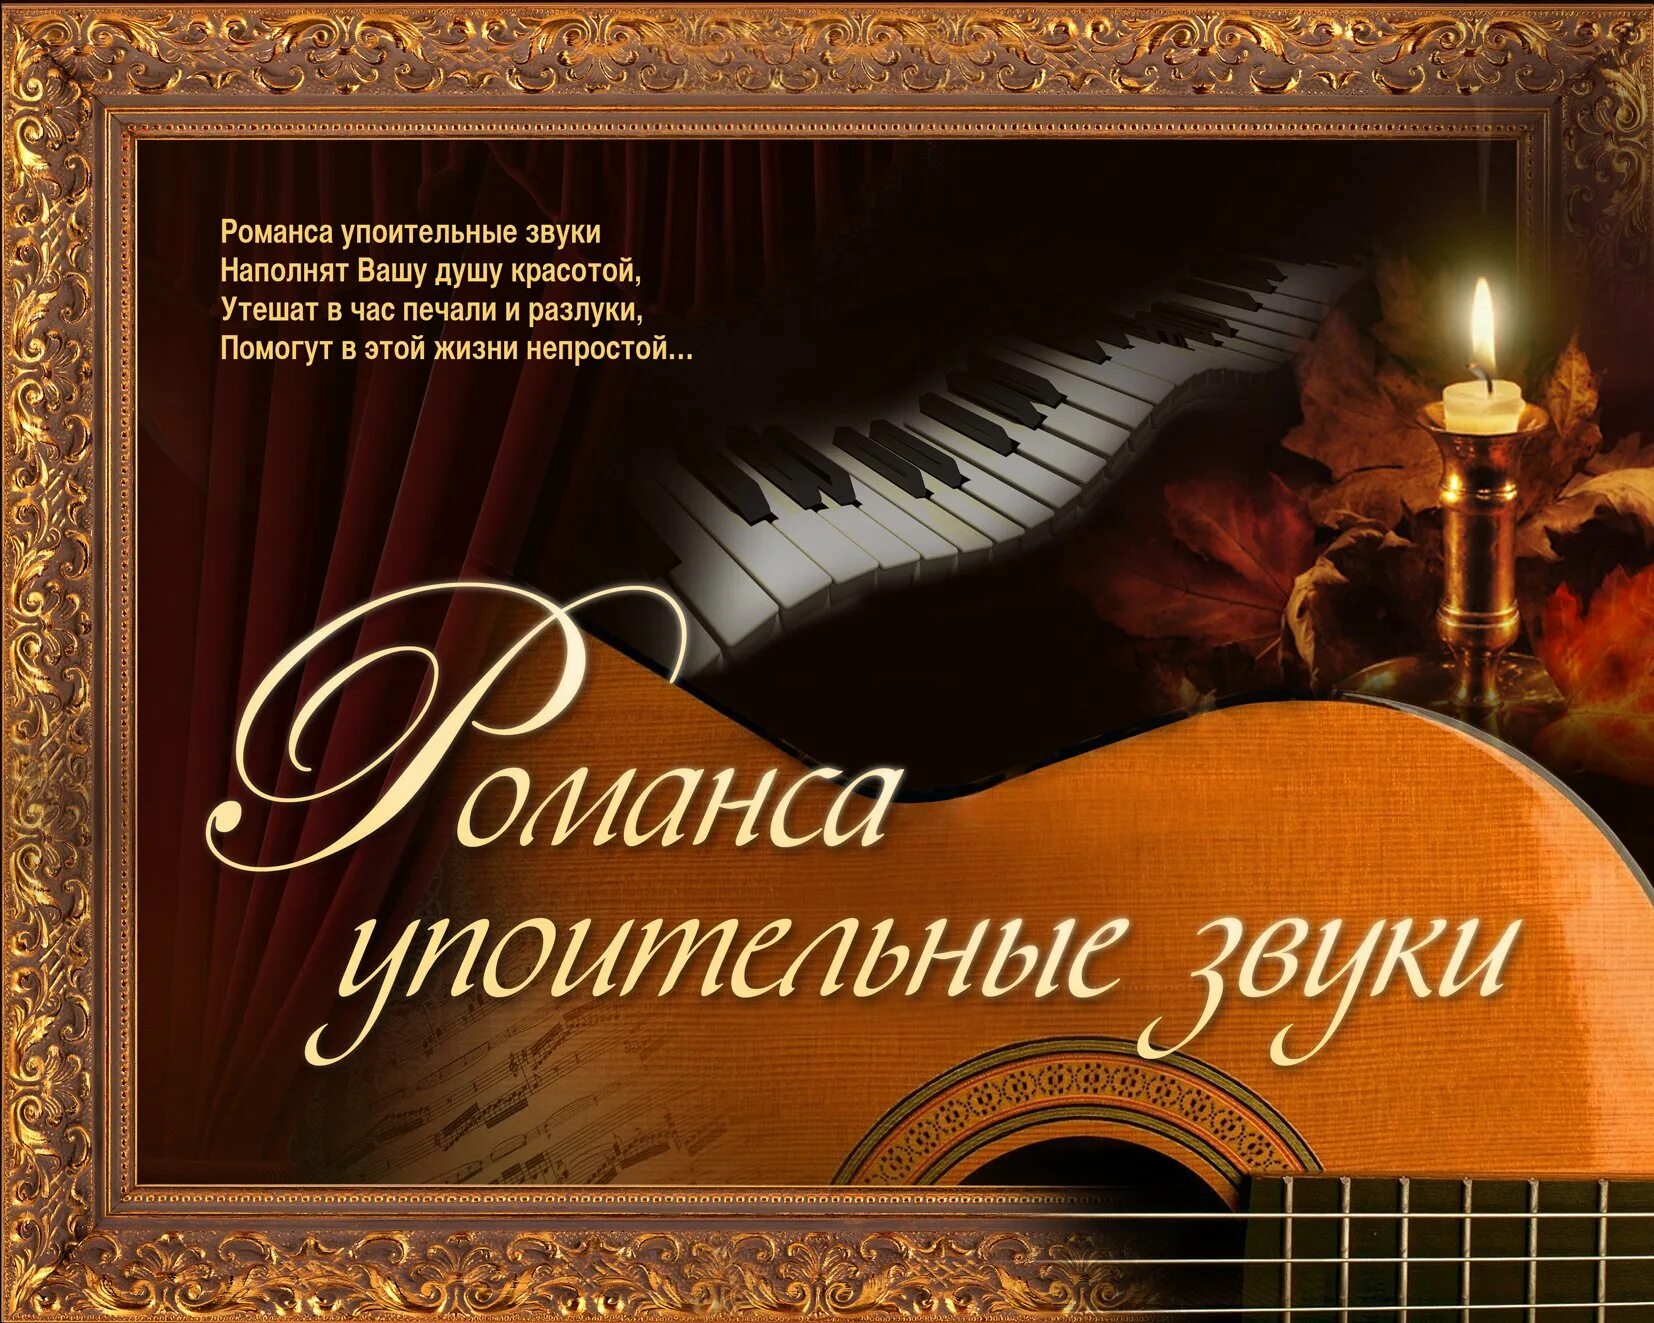 Музыкально-поэтический вечер. Вечер романса. Русский романс. Музыкально-литературный вечер.